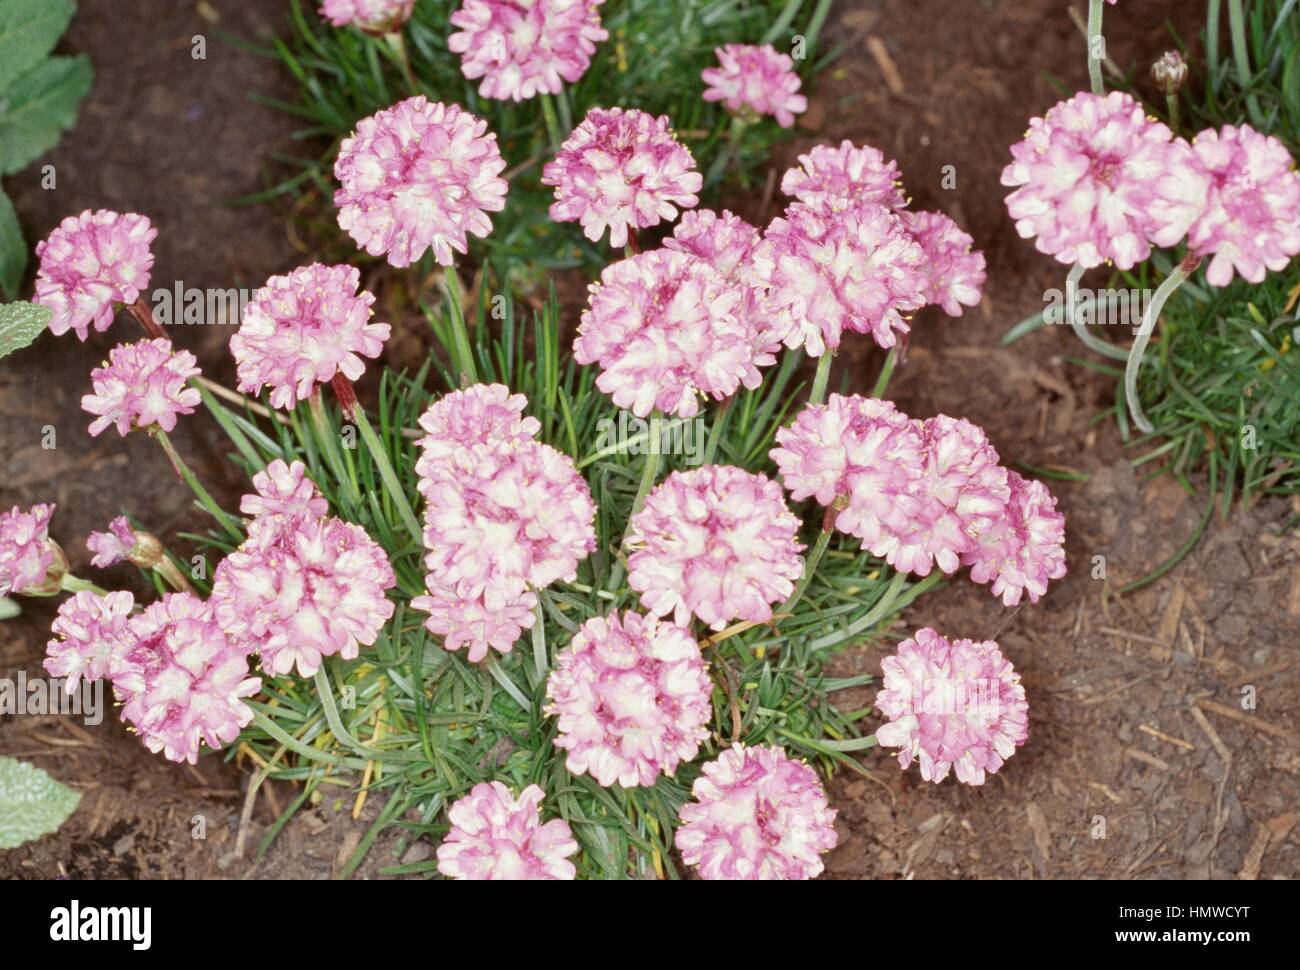 Thrift, Sea Thrift or Sea pink (Armeria maritima or Armeria vulgaris), Plumbaginaceae. Stock Photo